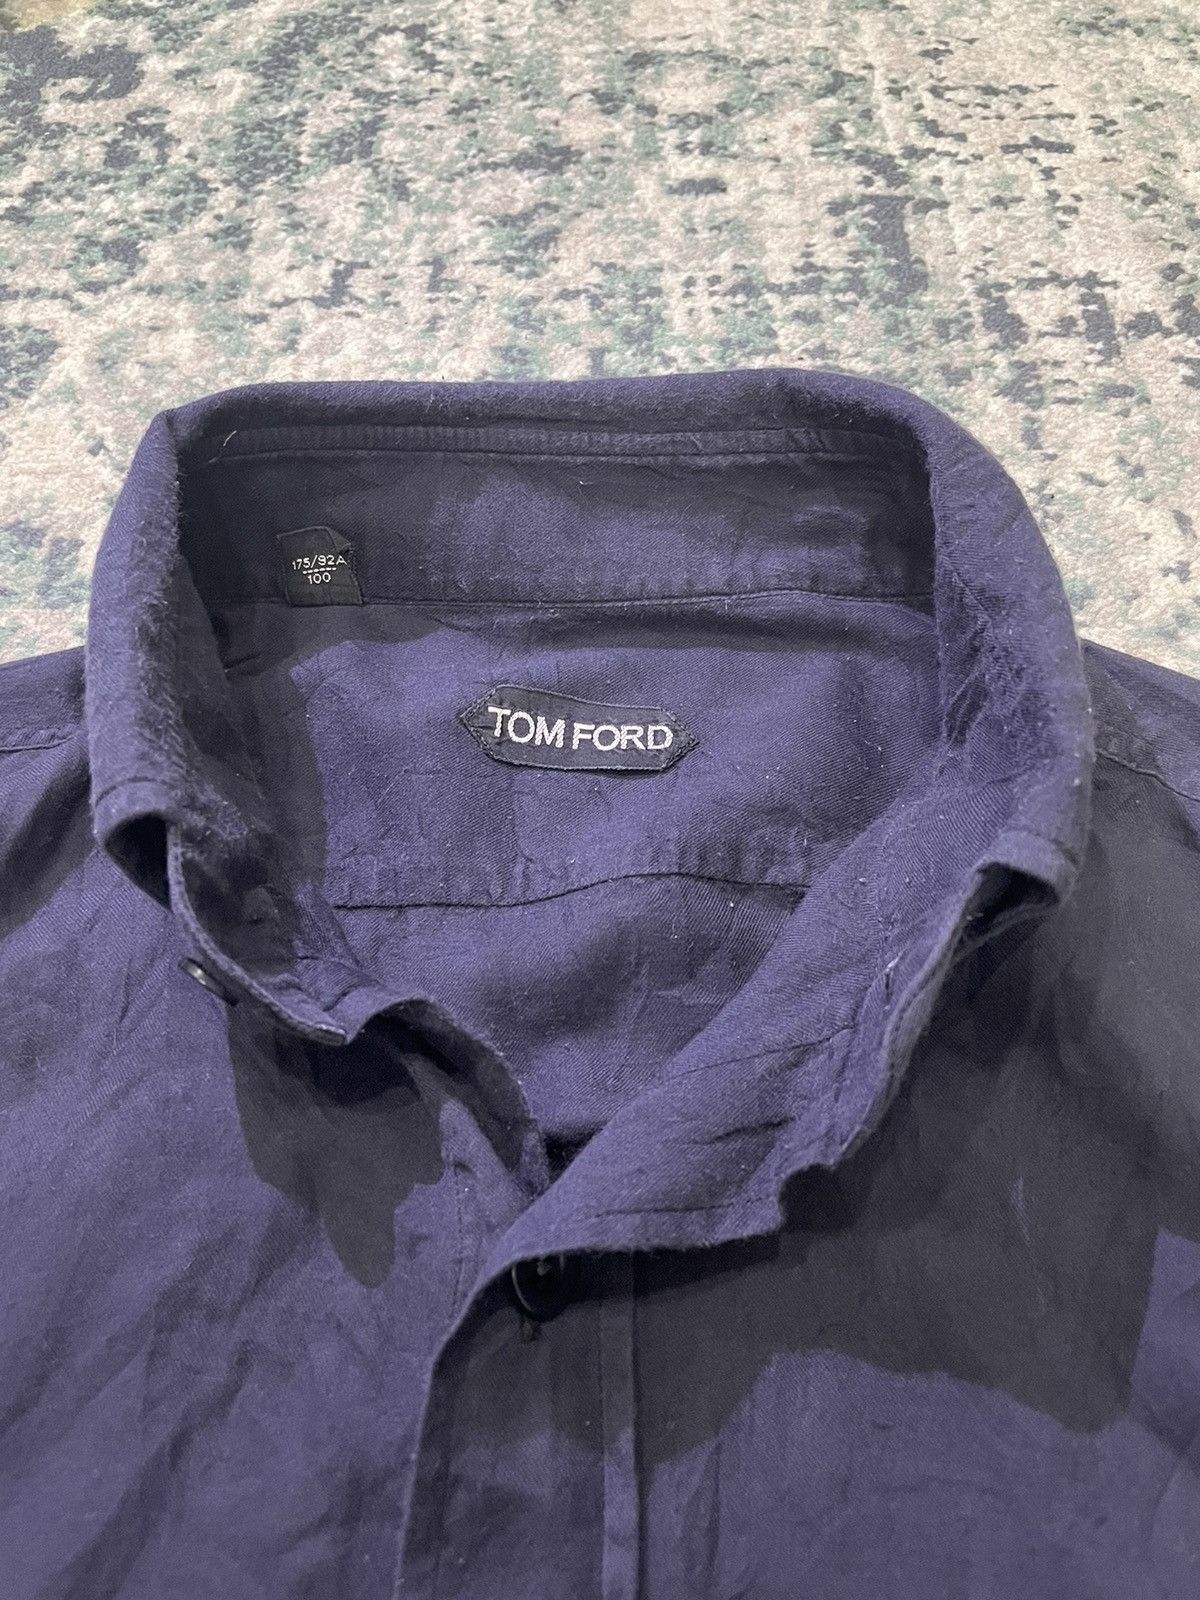 Tom Ford Cashmere & Cotton Shirt - 5